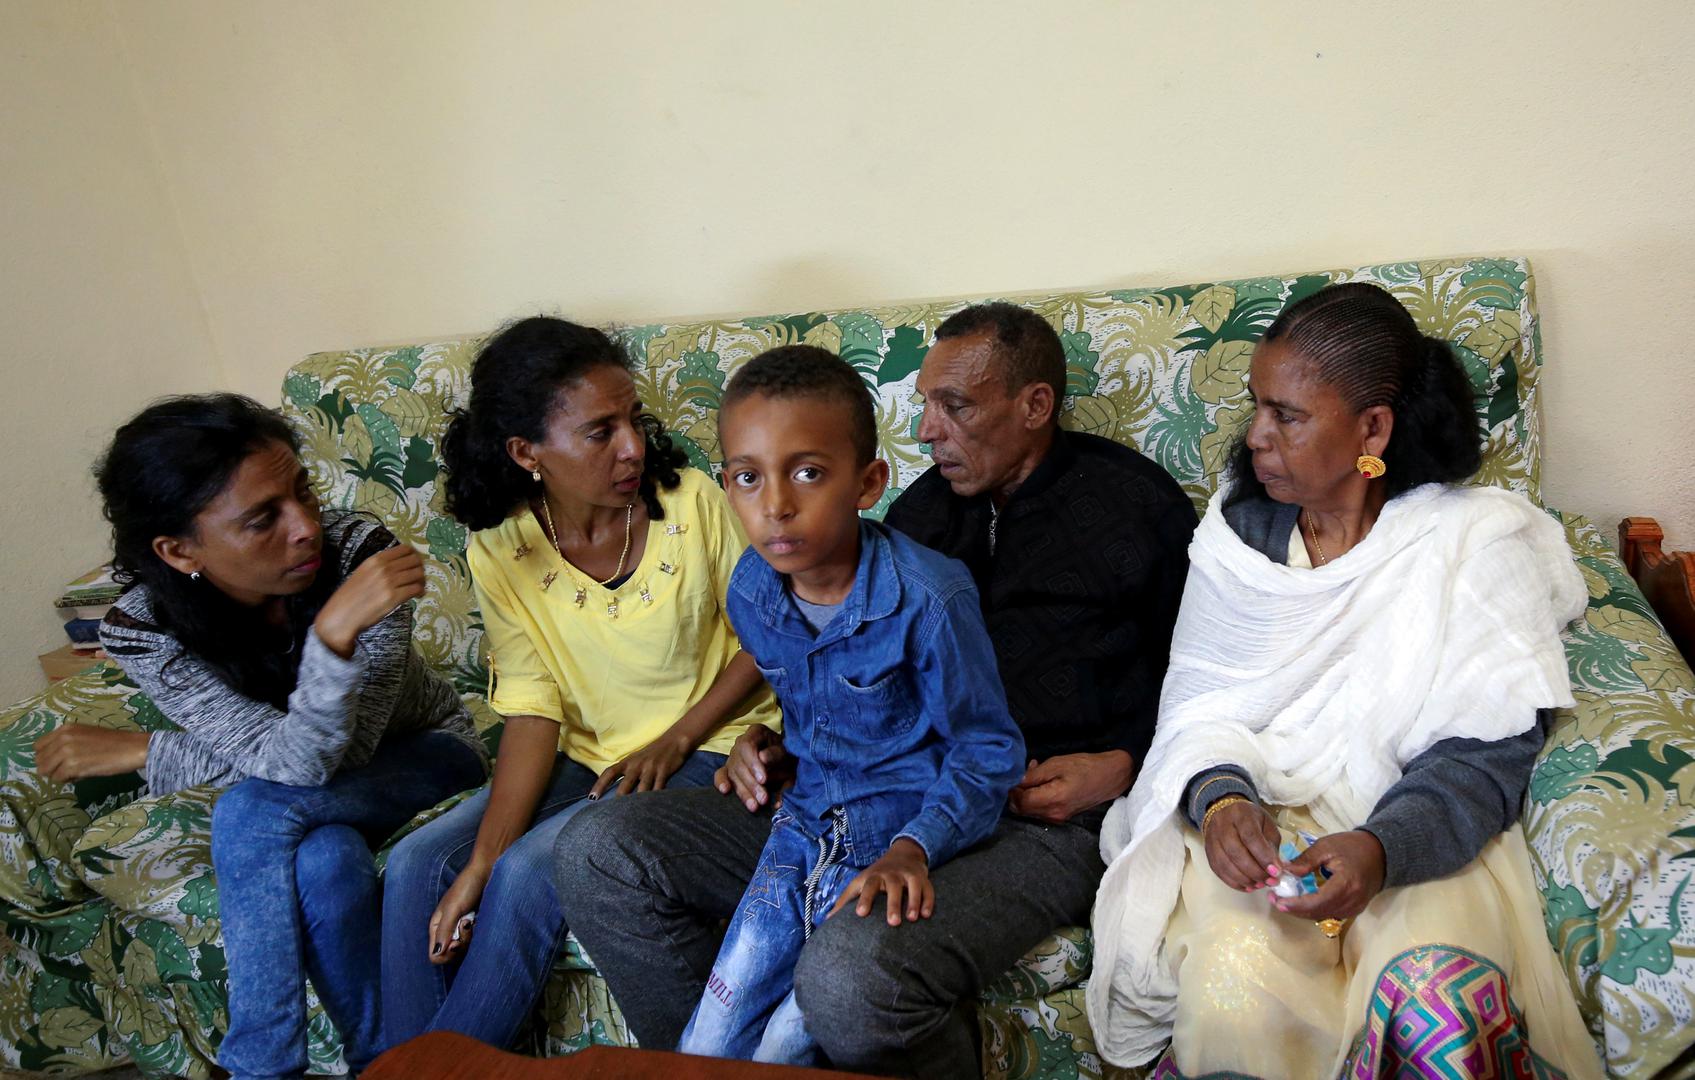 Kada su Etiopija i Eritrija 1998. godine zaratile, Addisalem Hadgu je mislio da se nema zbog čega brinuti, siguran da će njegova etiopska putovnica štititi njegovu eritreansku ženu od protjerivanja.